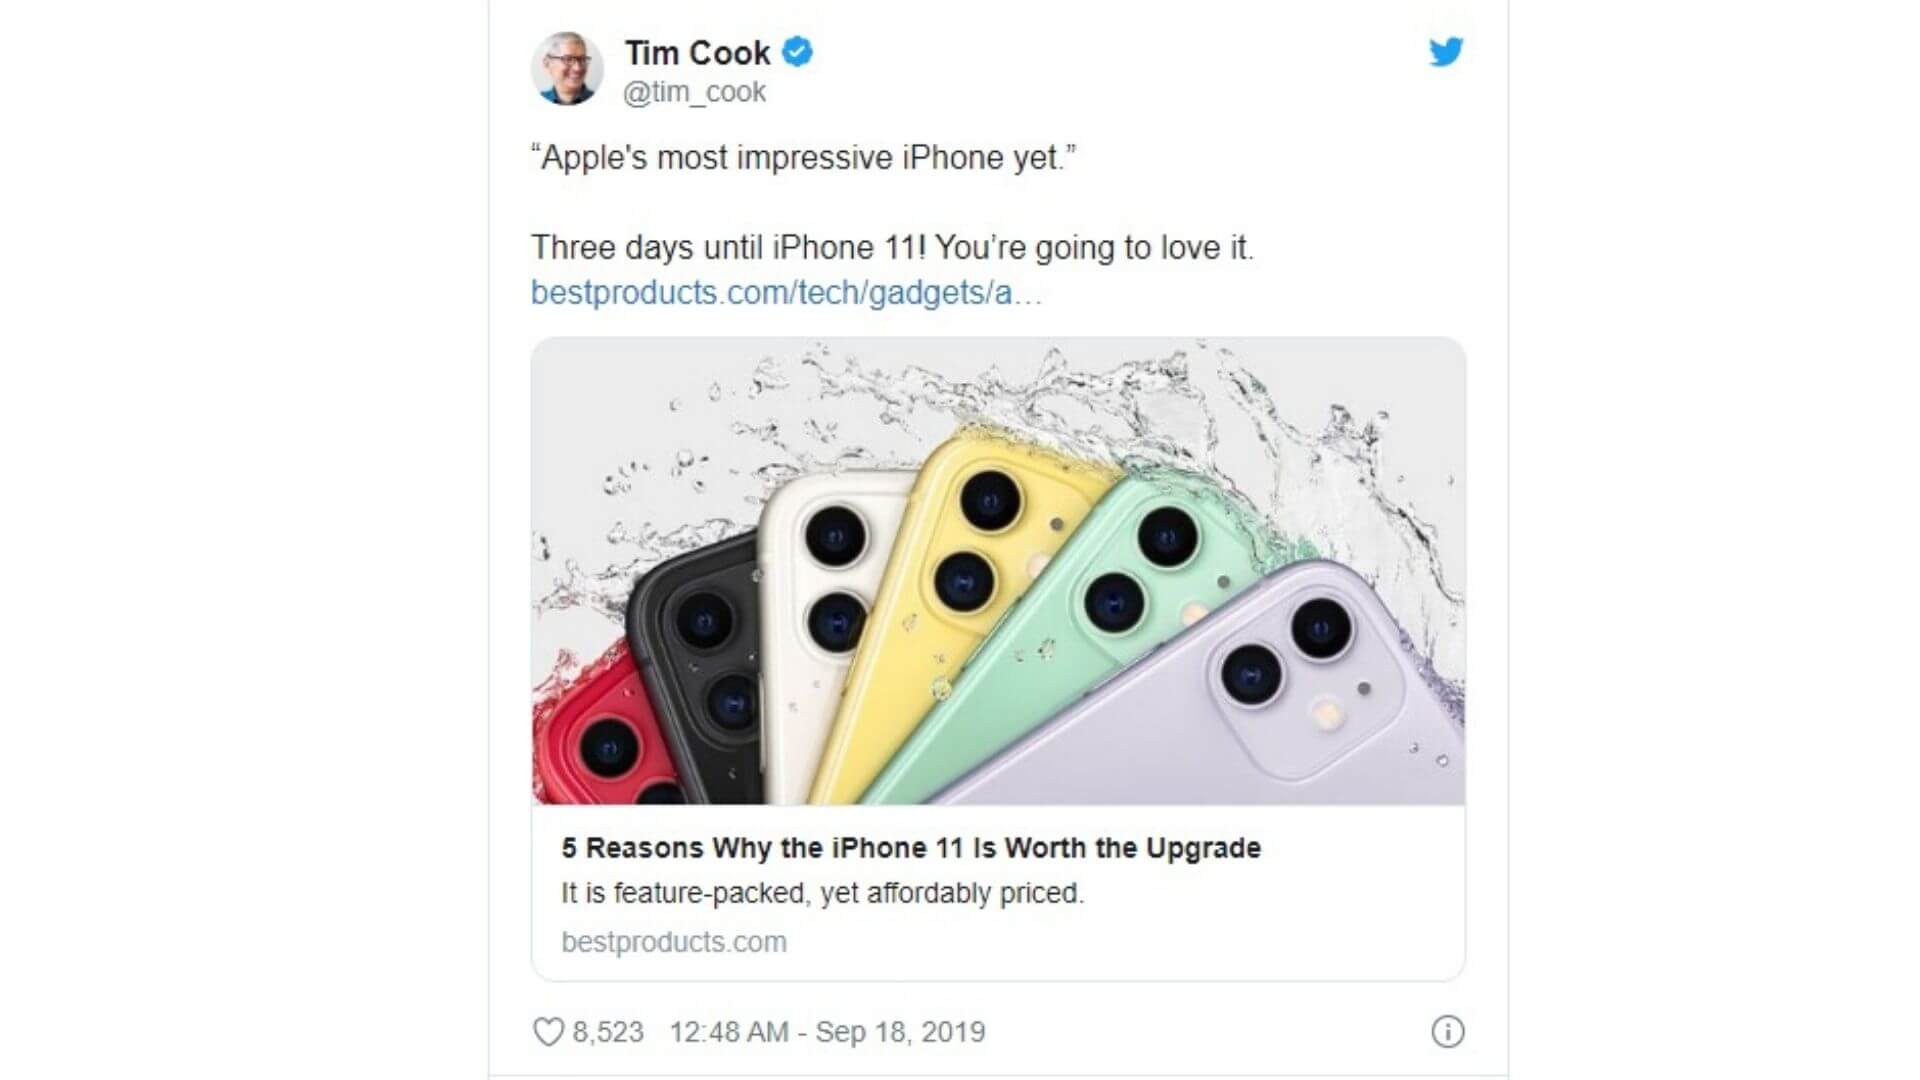 Tim Cook tweet for iPhone 11 series